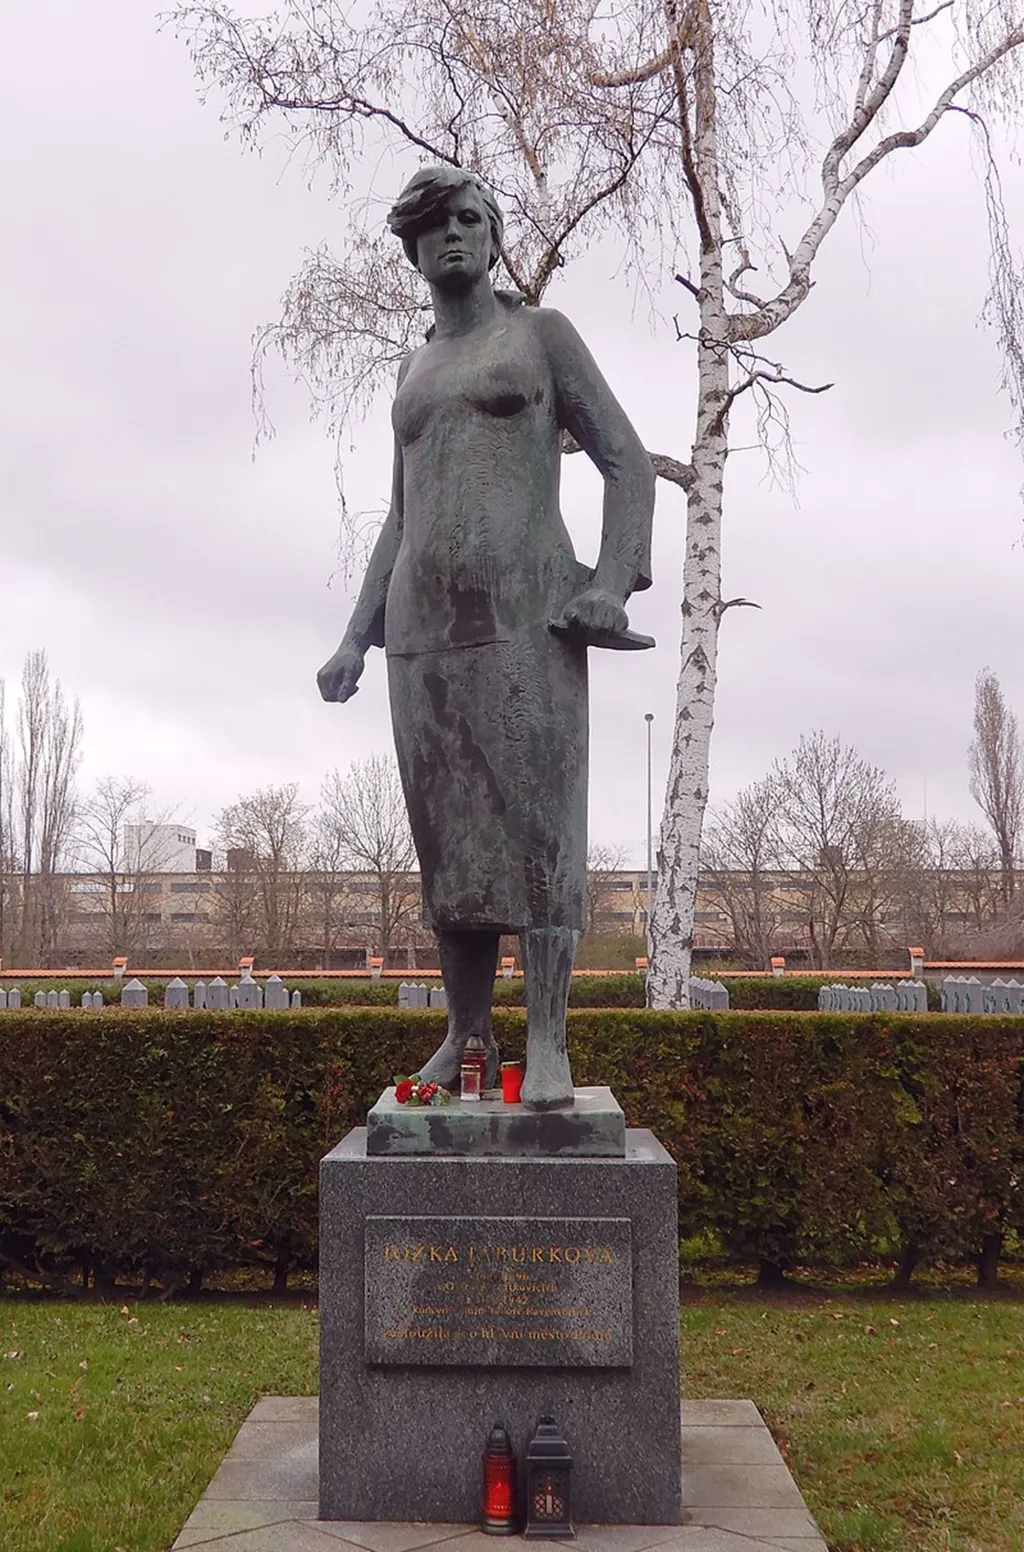 Pomník Jožky Jabůrkové byl léta v pražských Košířích. Po roce 1989 ho někdo natřel na žluto. V roce 1992 majitelka pozemku rozhodla o odstranění sochy. Převezena byla do depozitáře hlavního města Prahy. Znovu byl pomník instalován v roce 2012 na Olšanských hřbitovech